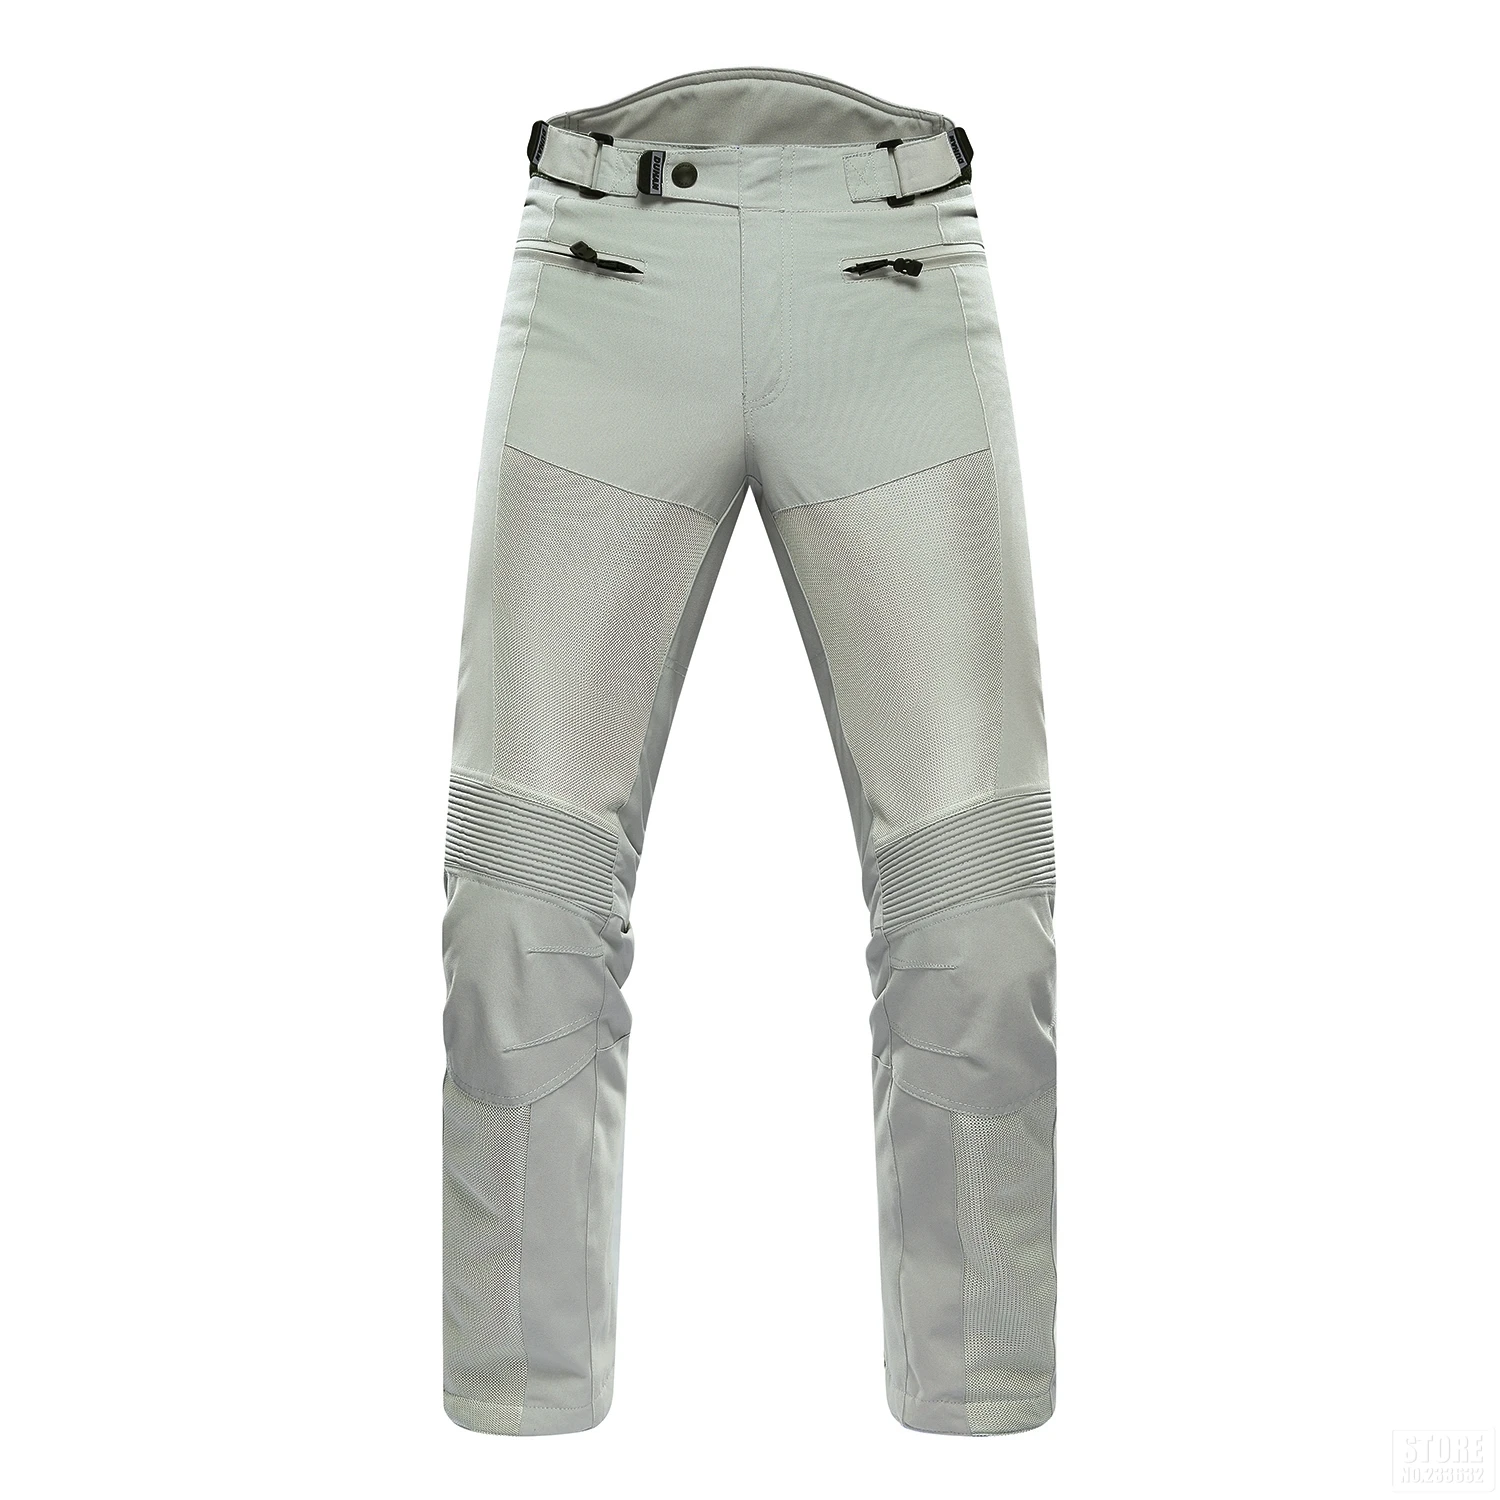 DUHAN мотоциклетные брюки мужские мото брюки гонки внедорожные летние сетчатые брюки Защитное снаряжение с накладками мужские панталоны для мотокросса